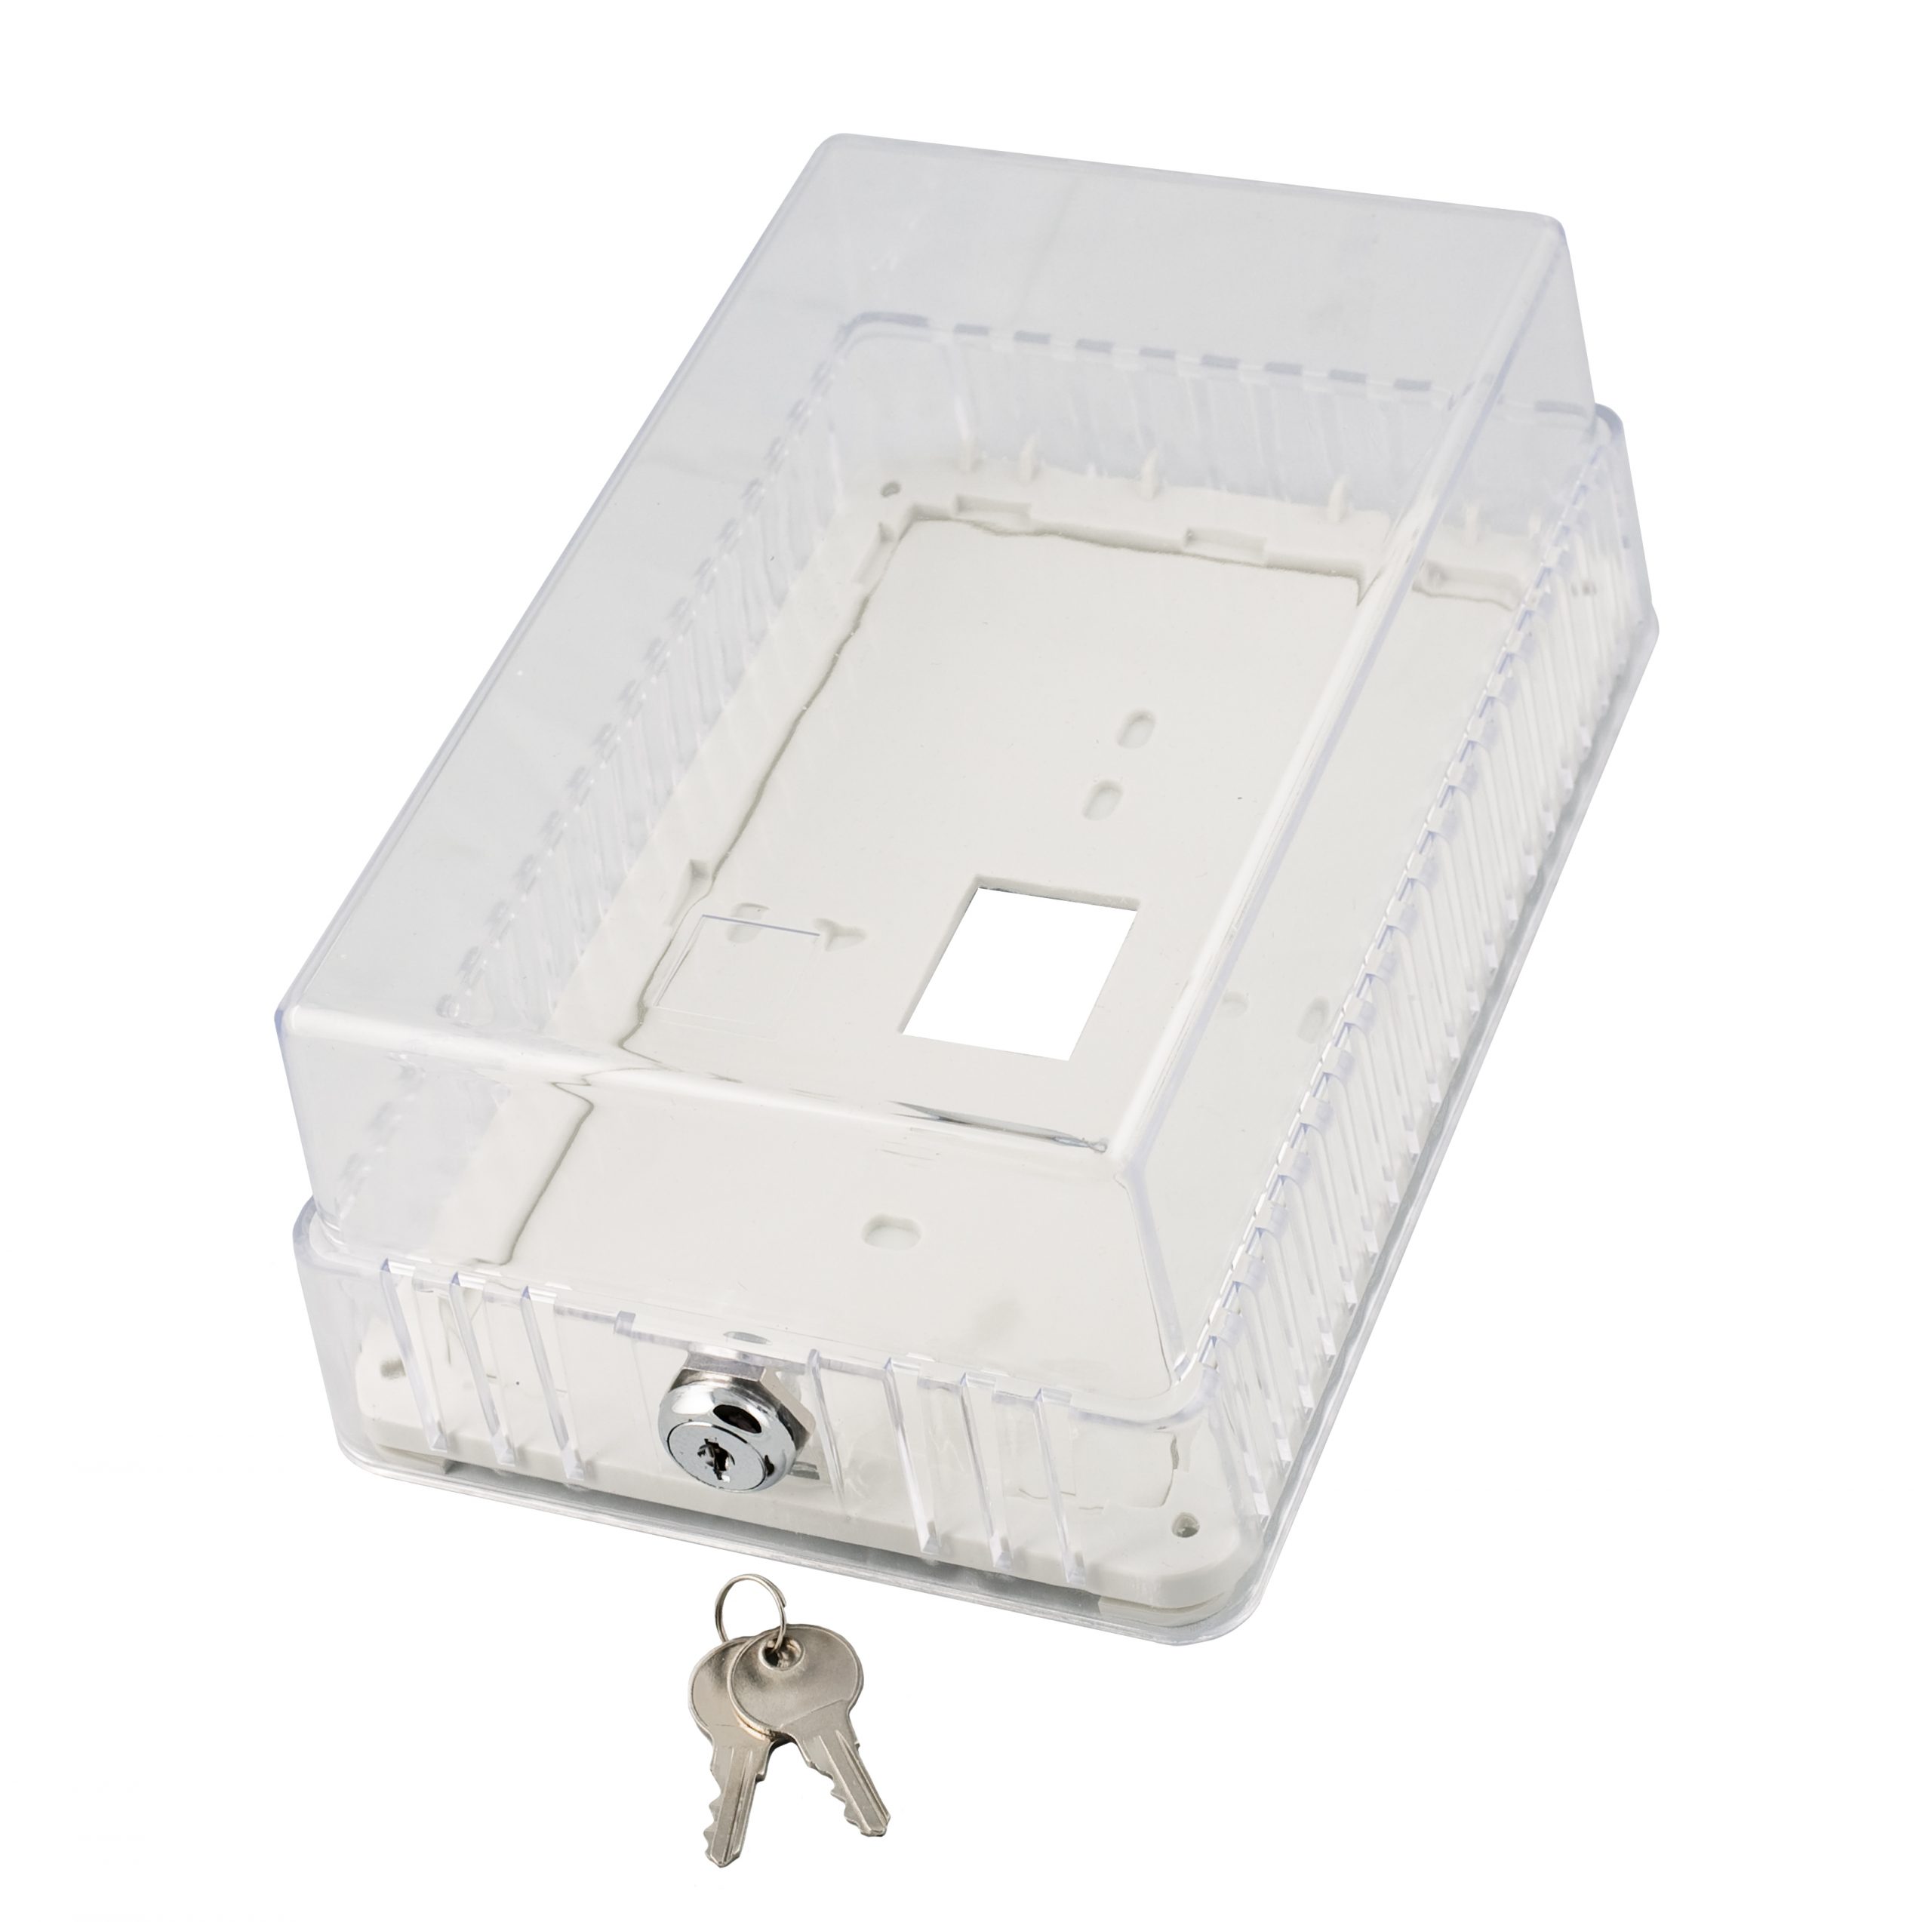 TP02CL Thermostat Guard | Plastic, Medium - 7.80 x 5.00 x 3.35